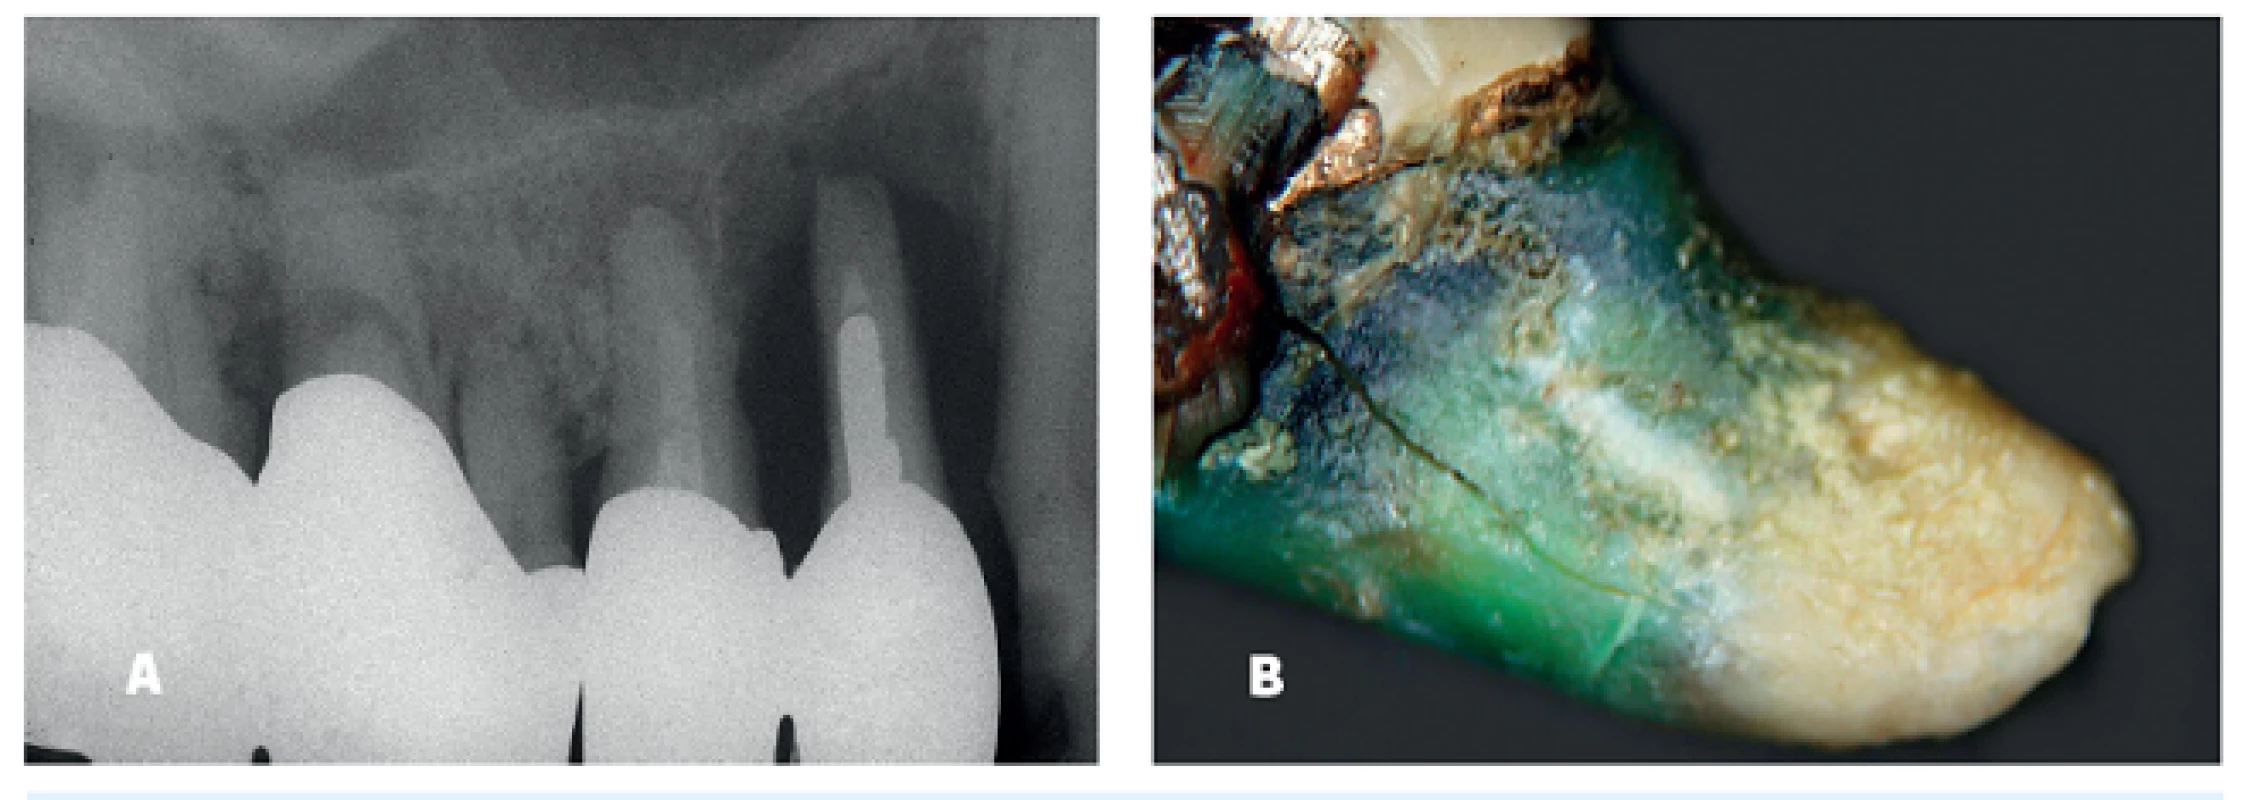 RTG snímek zubu 24 (a), stav kořene po expozici 10 let (b)